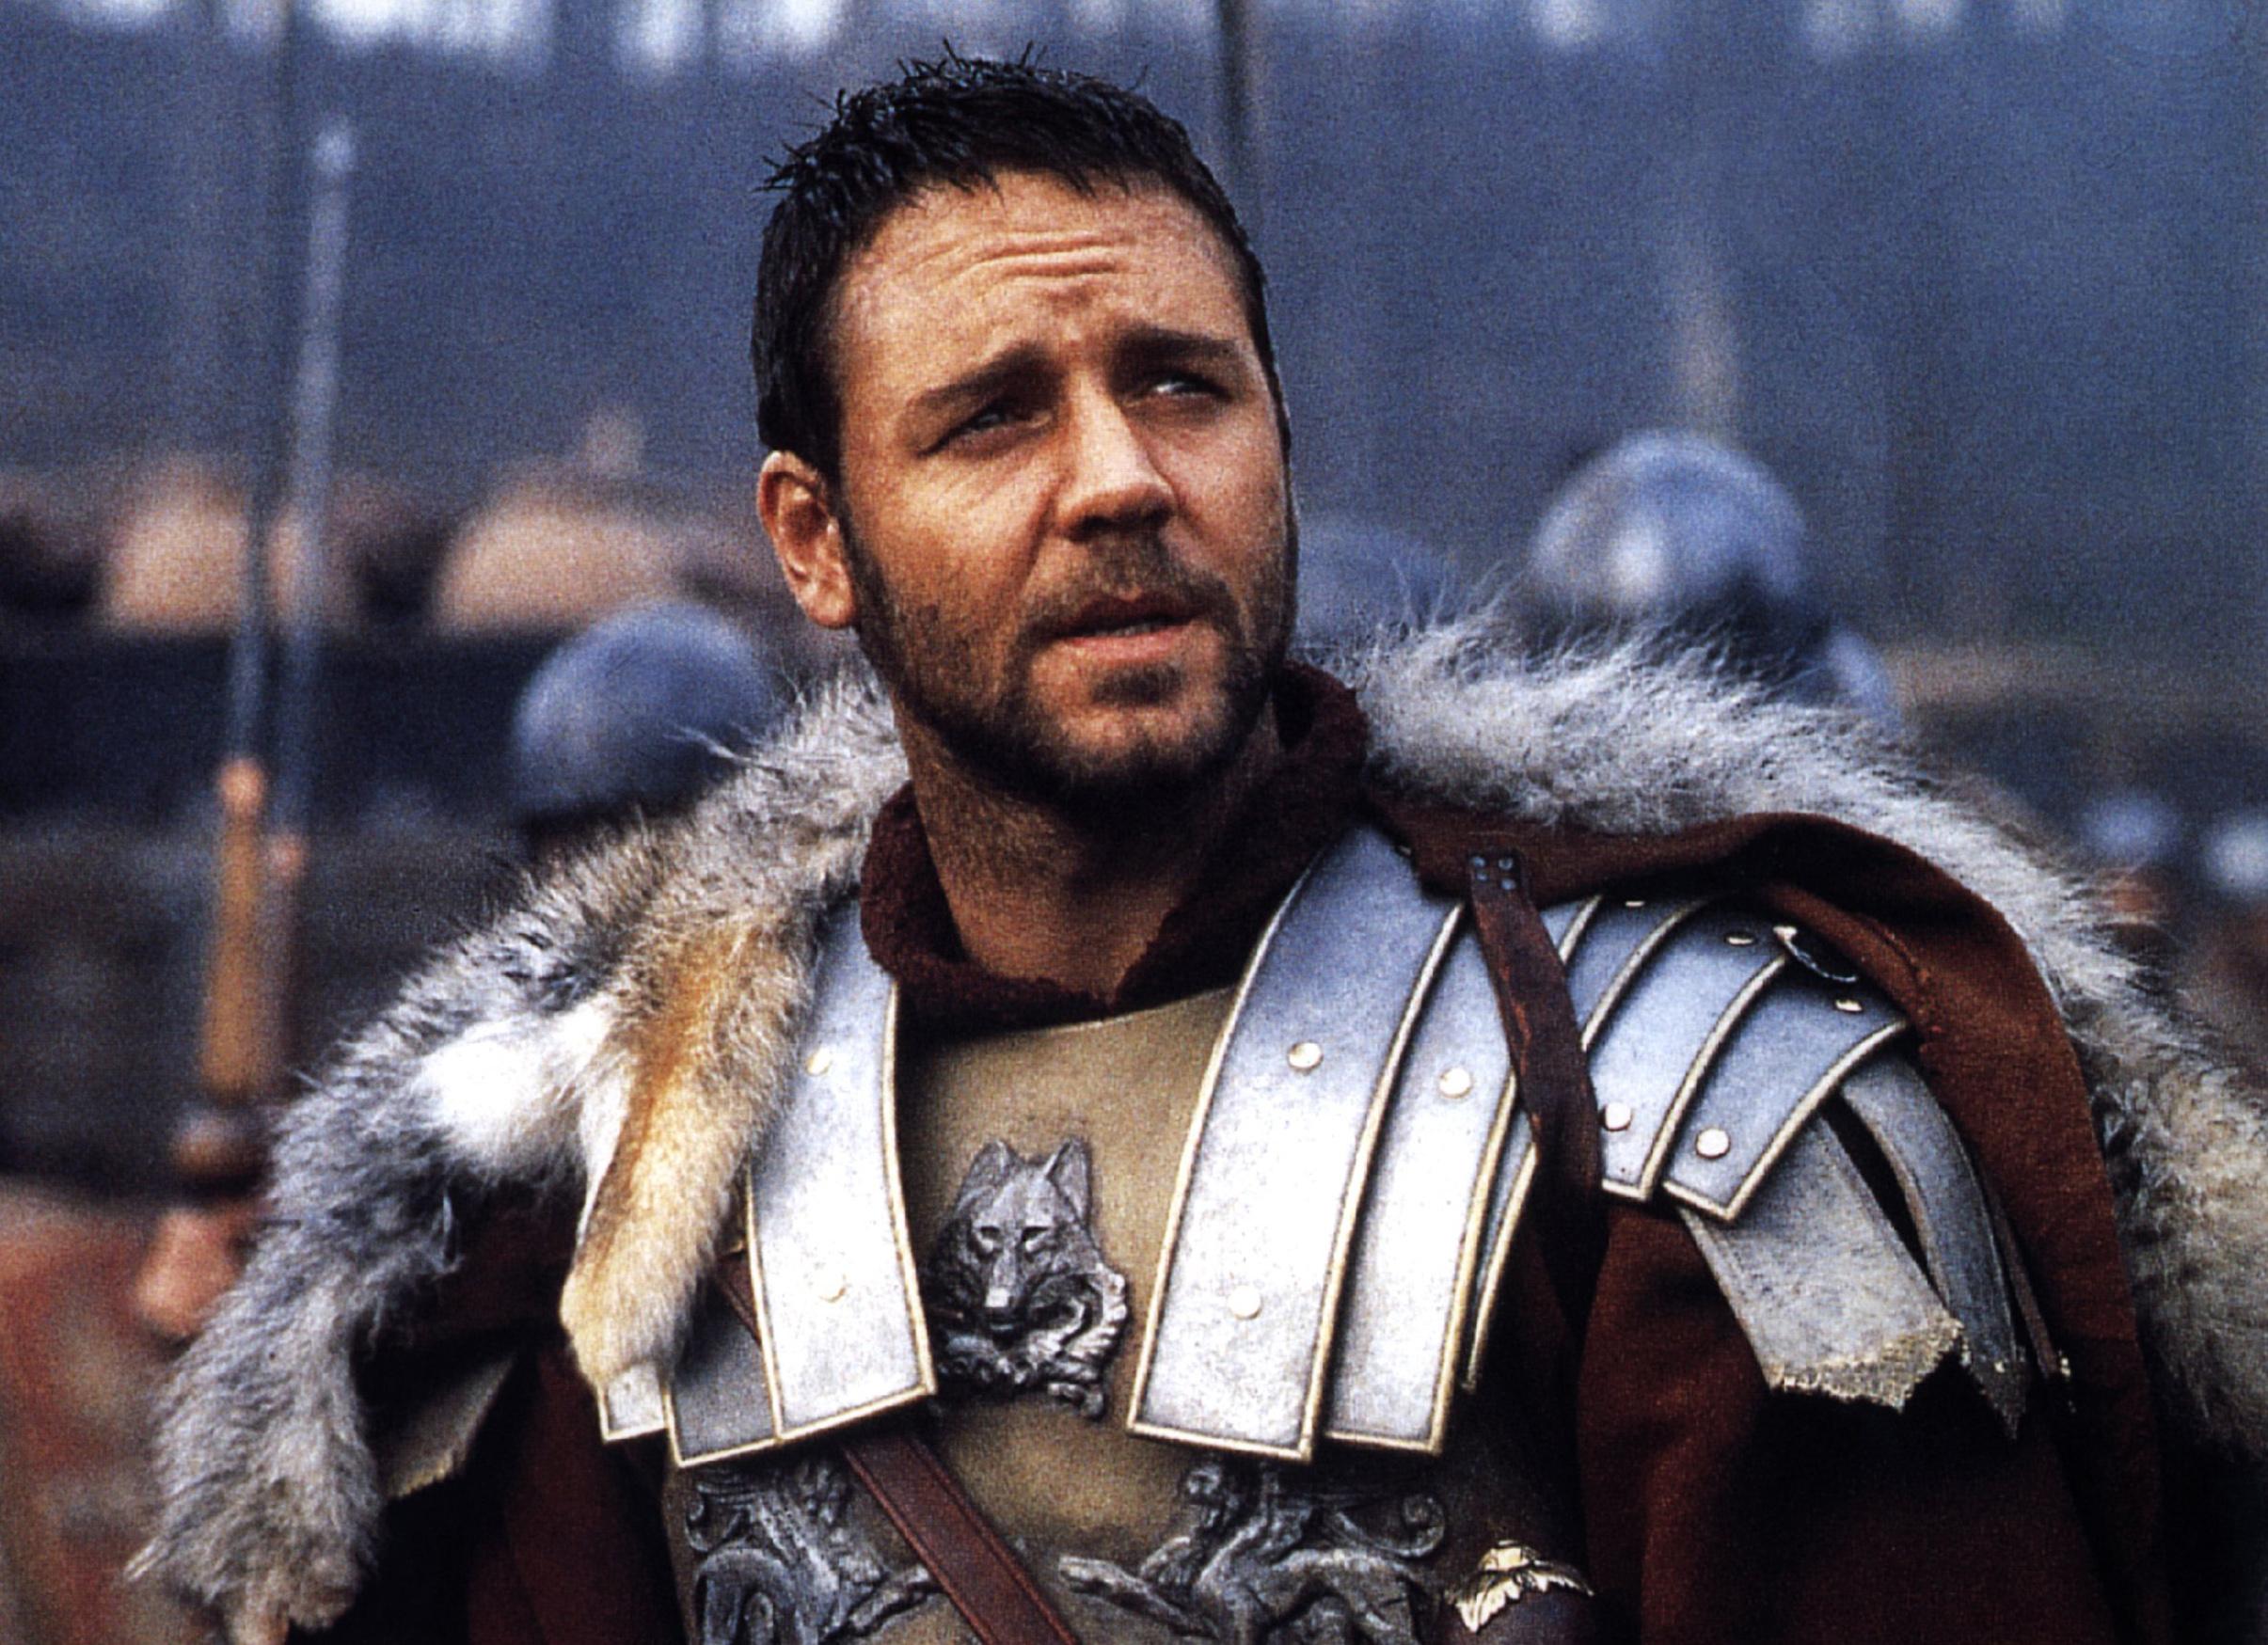 russell crowe în filmul gladiatorul, pe terenul de luptă, îmbrăcat în armura de general roman, cu armură arginie și pelerină roșie cu blană